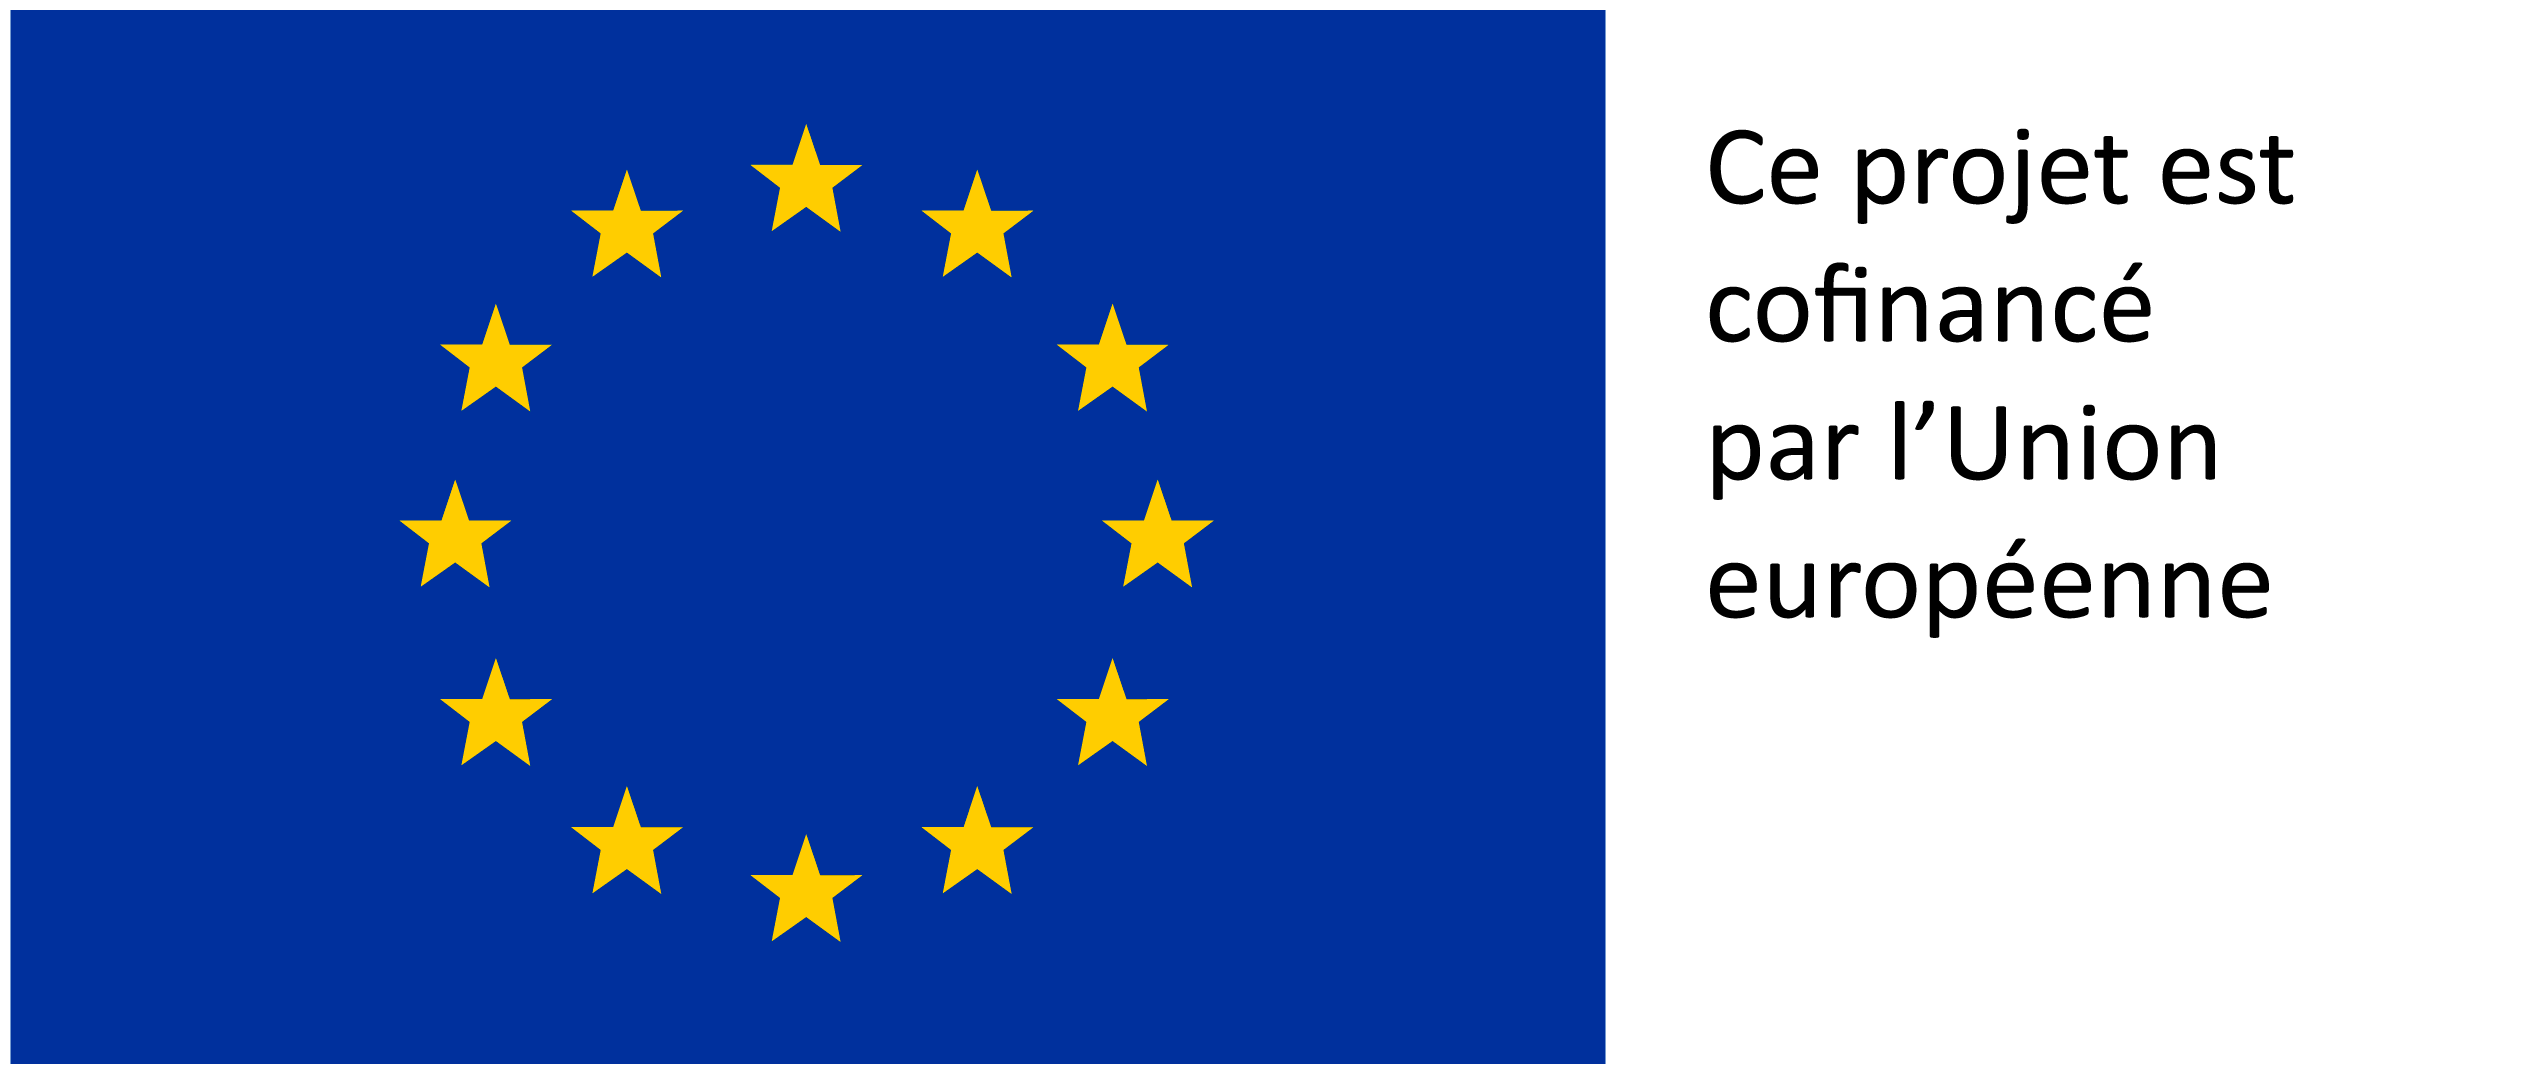 VISUEL_FSE.jpg (UE_flag)